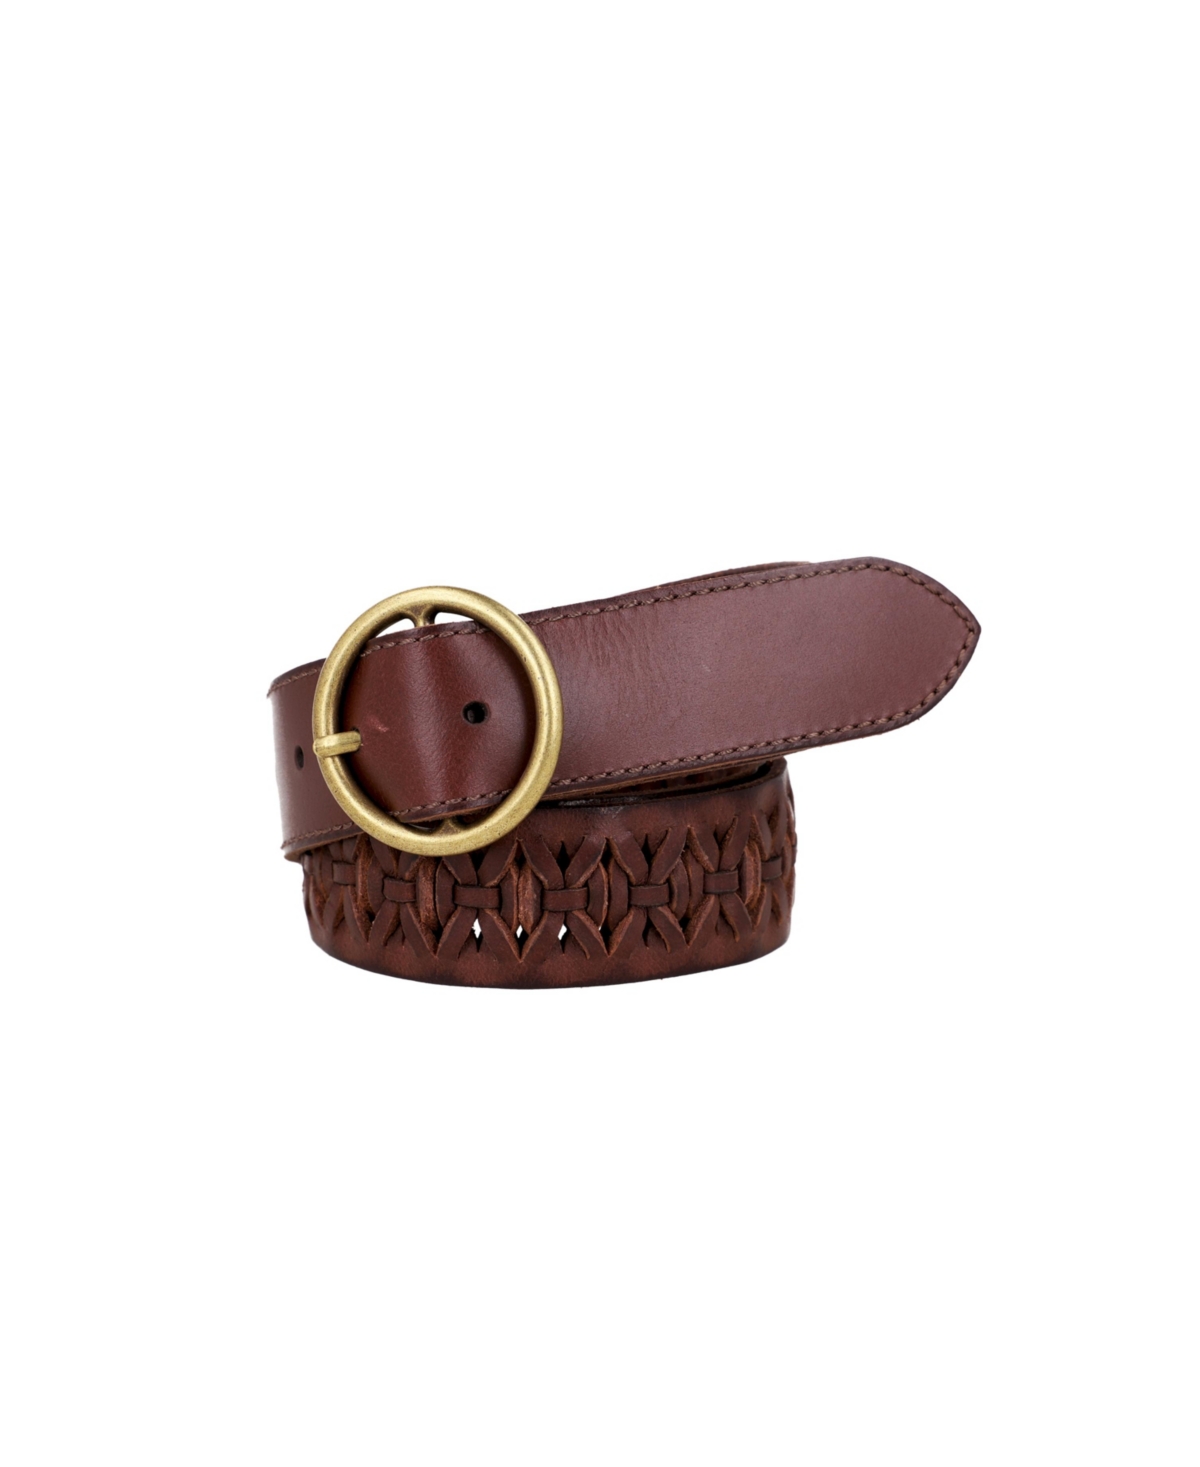 Frye Women's Woven Leather Belt In Brown